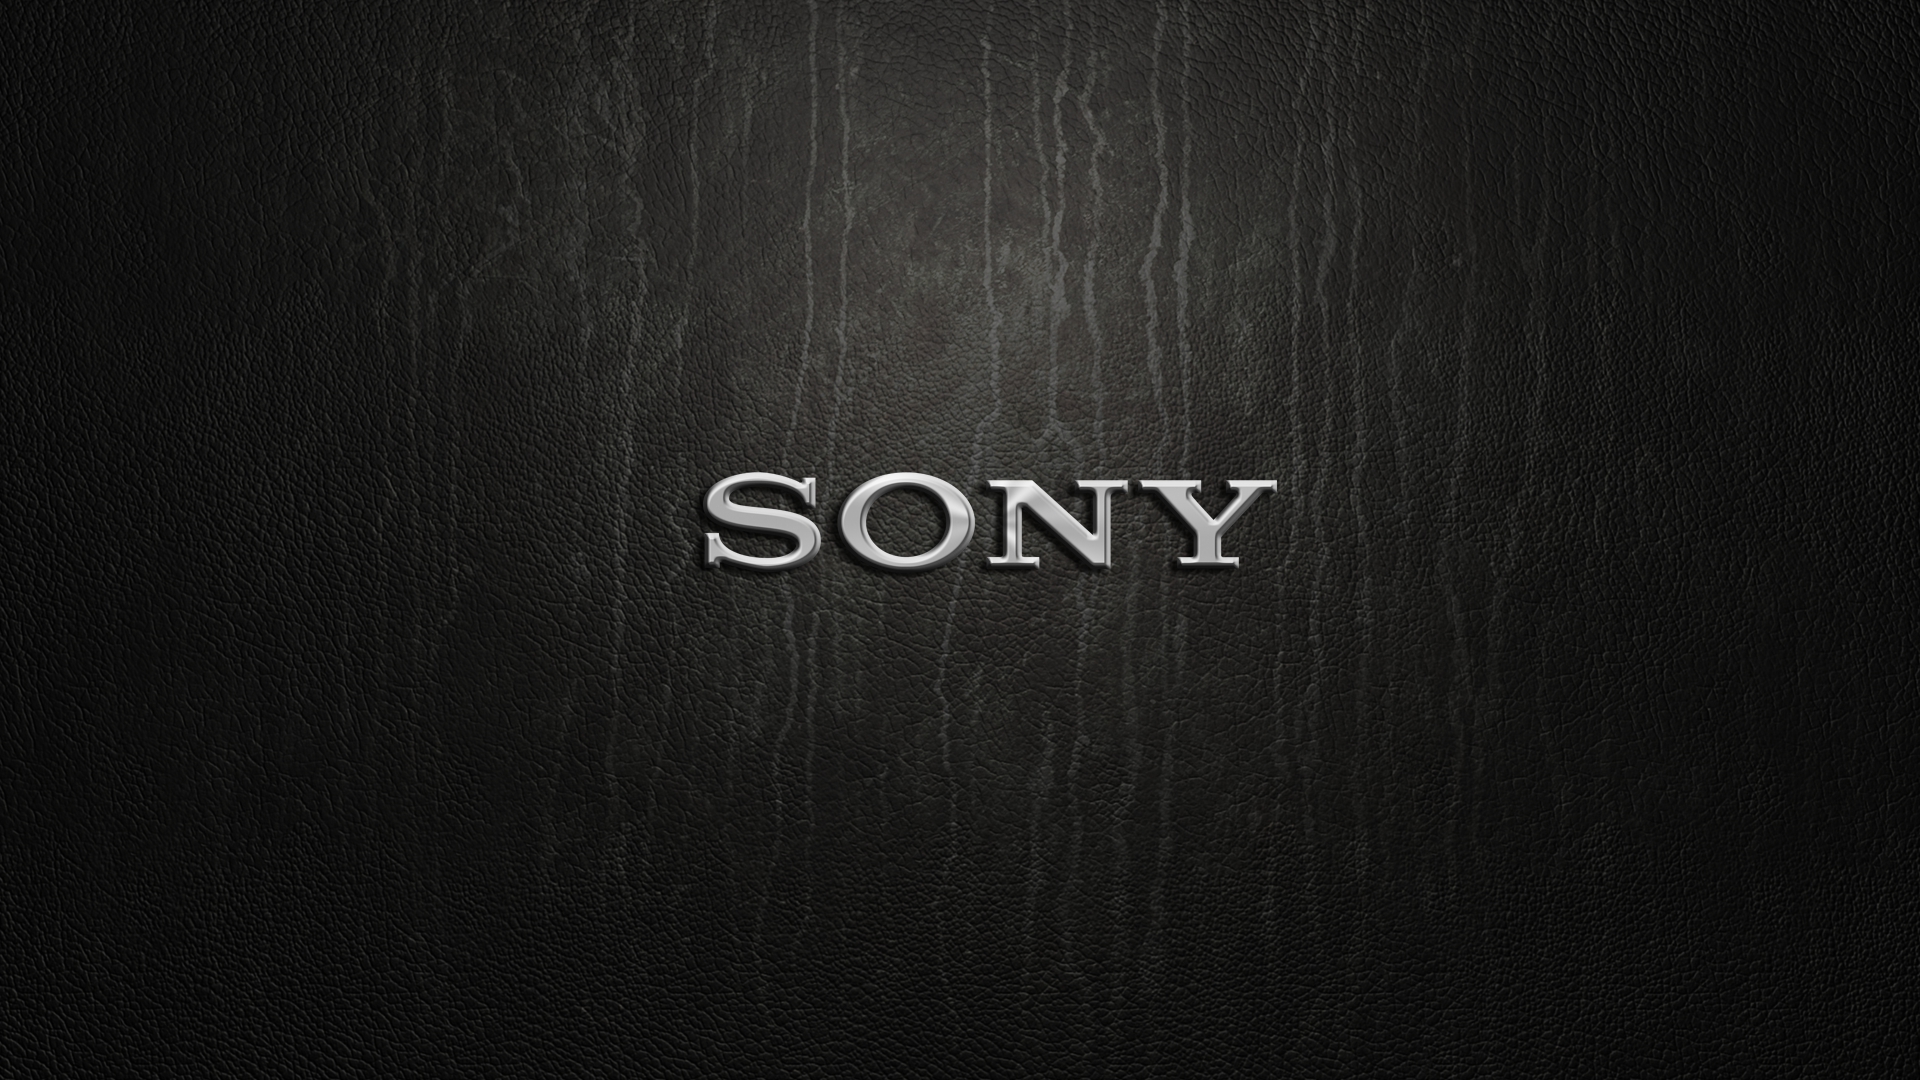 Sony Wallpaper